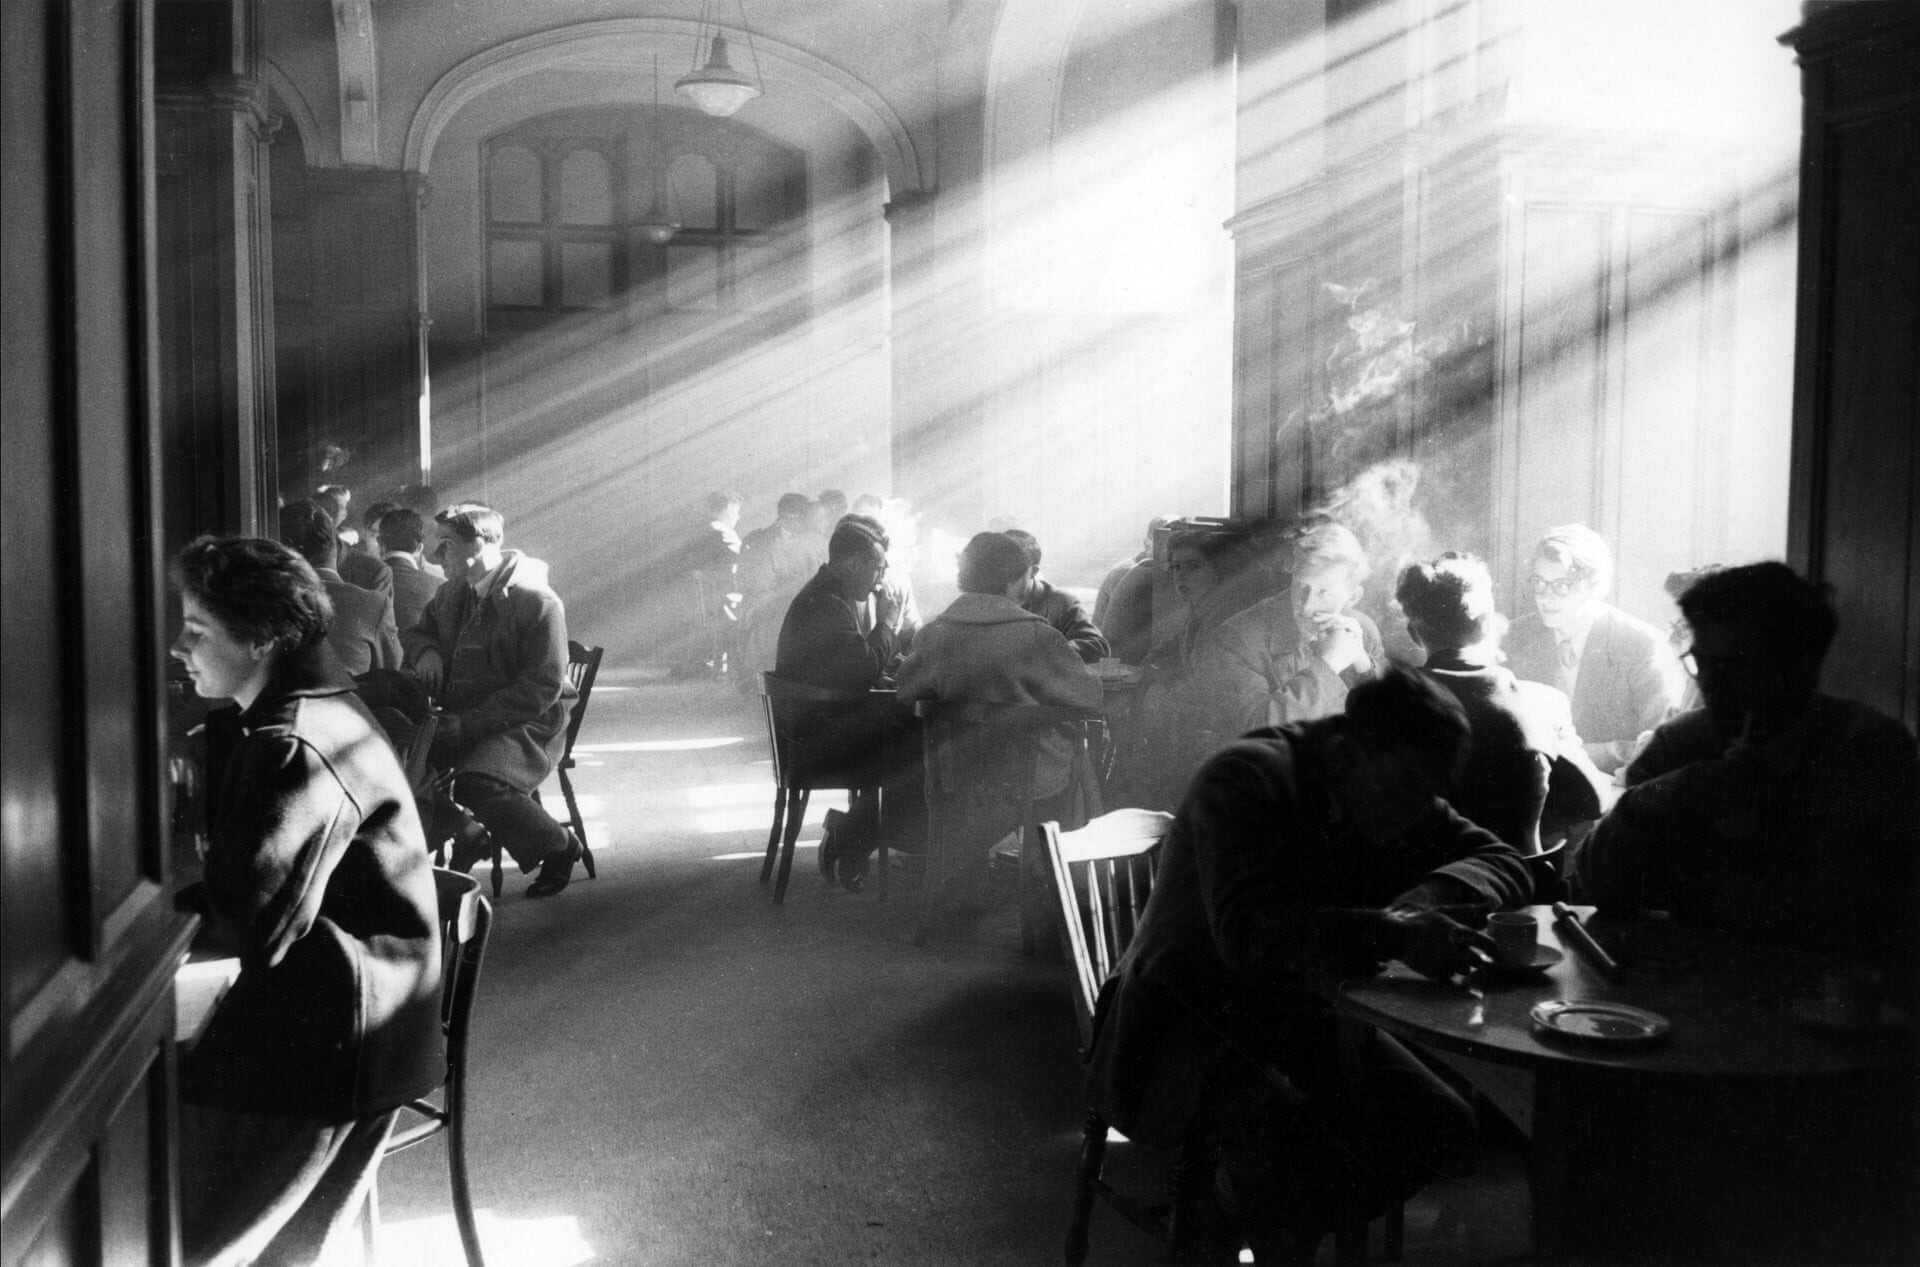 Студенческий союз, Тевиот-Роу Хаус, Эдинбург, 1961. Фотограф Роберт Бломфилд